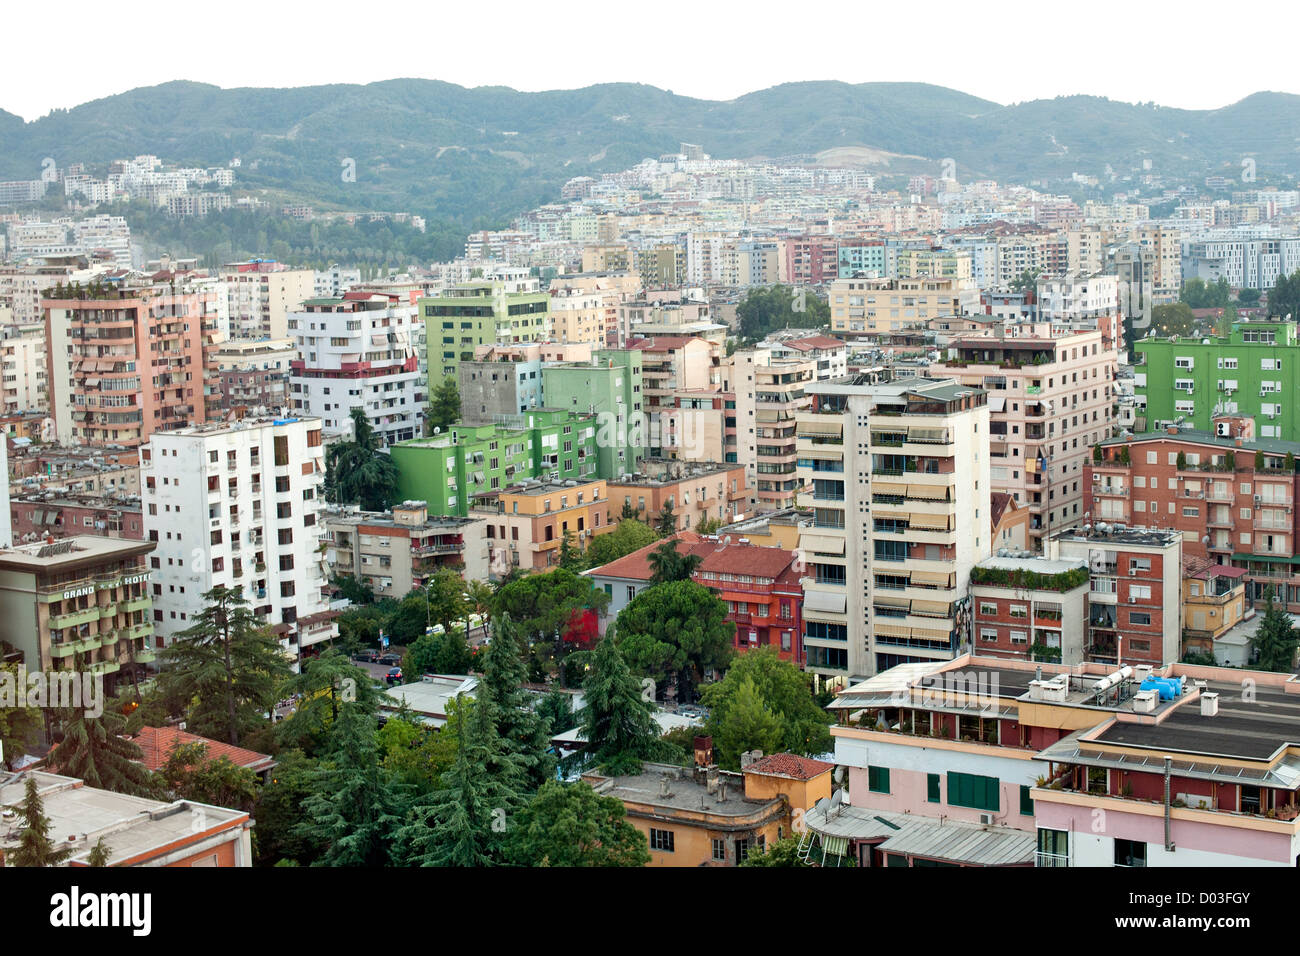 View across the city of Tirana, the capital of Albania. Stock Photo